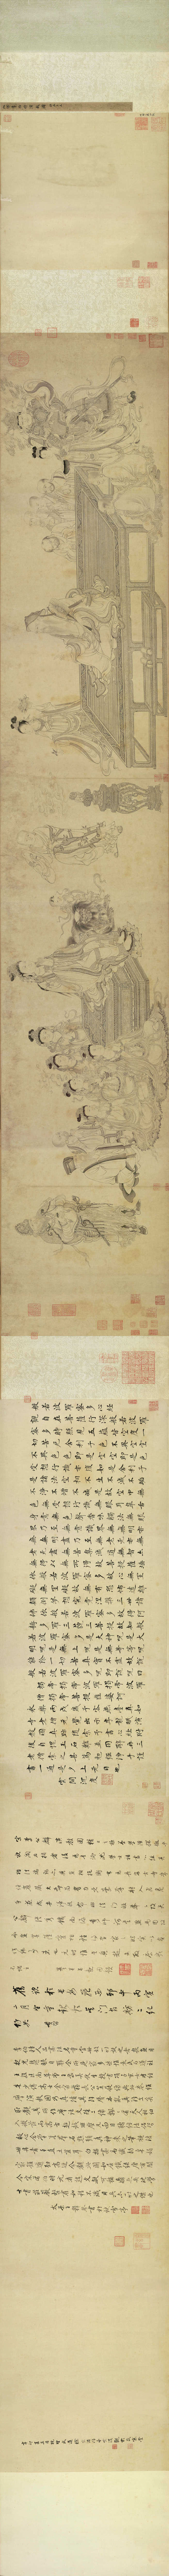 B5027014《维摩演教图卷》宋代画家李公麟高清作品 宋代-第1张